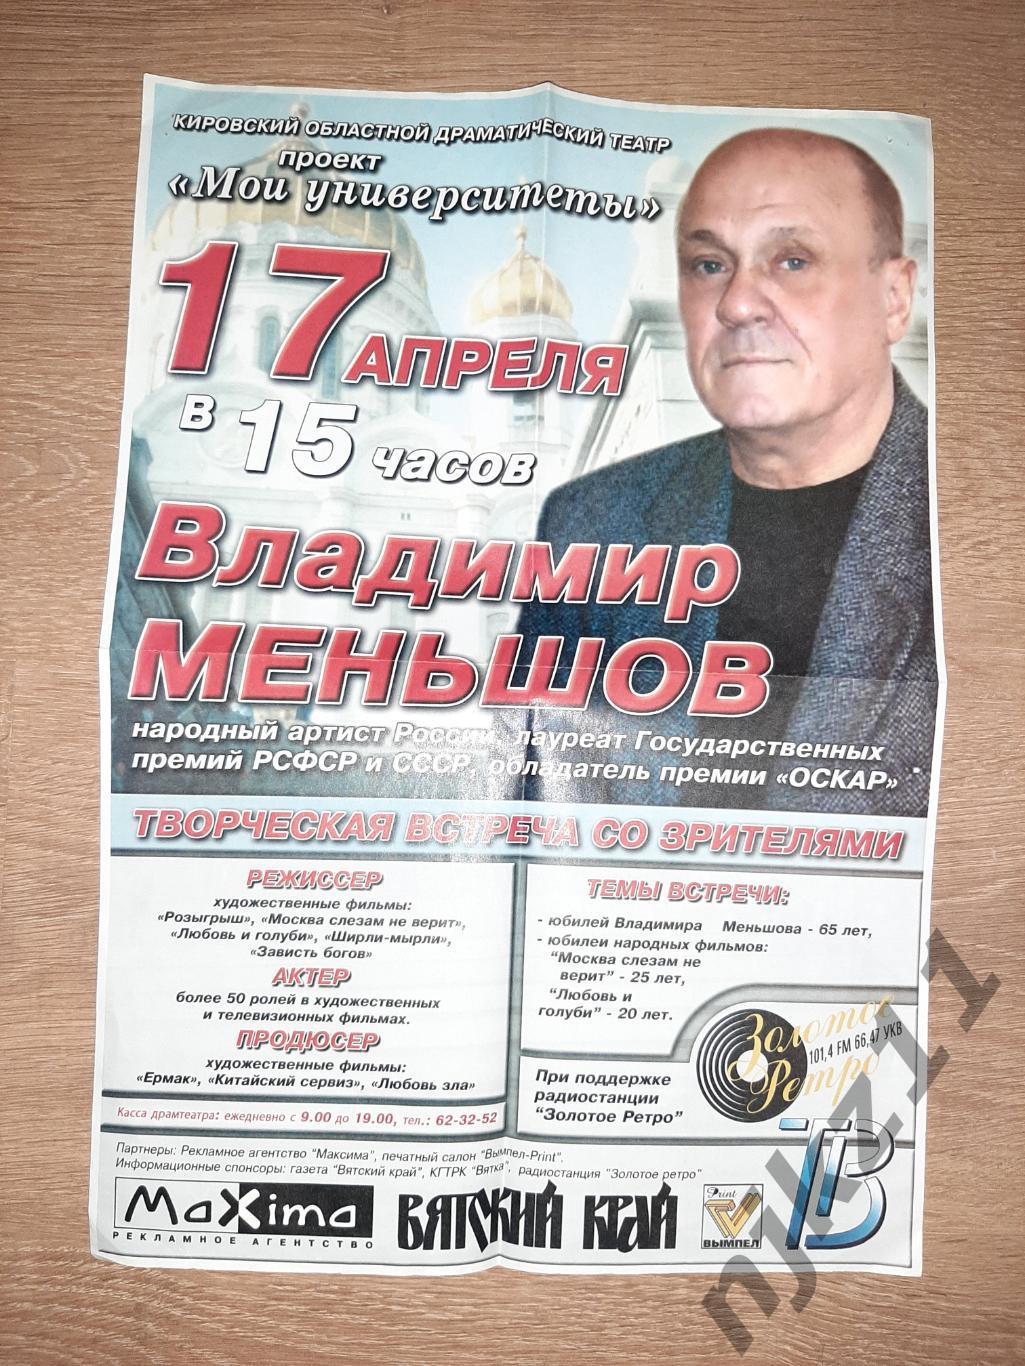 Афиша театра Владимир Меньшов народный артист России 2005г